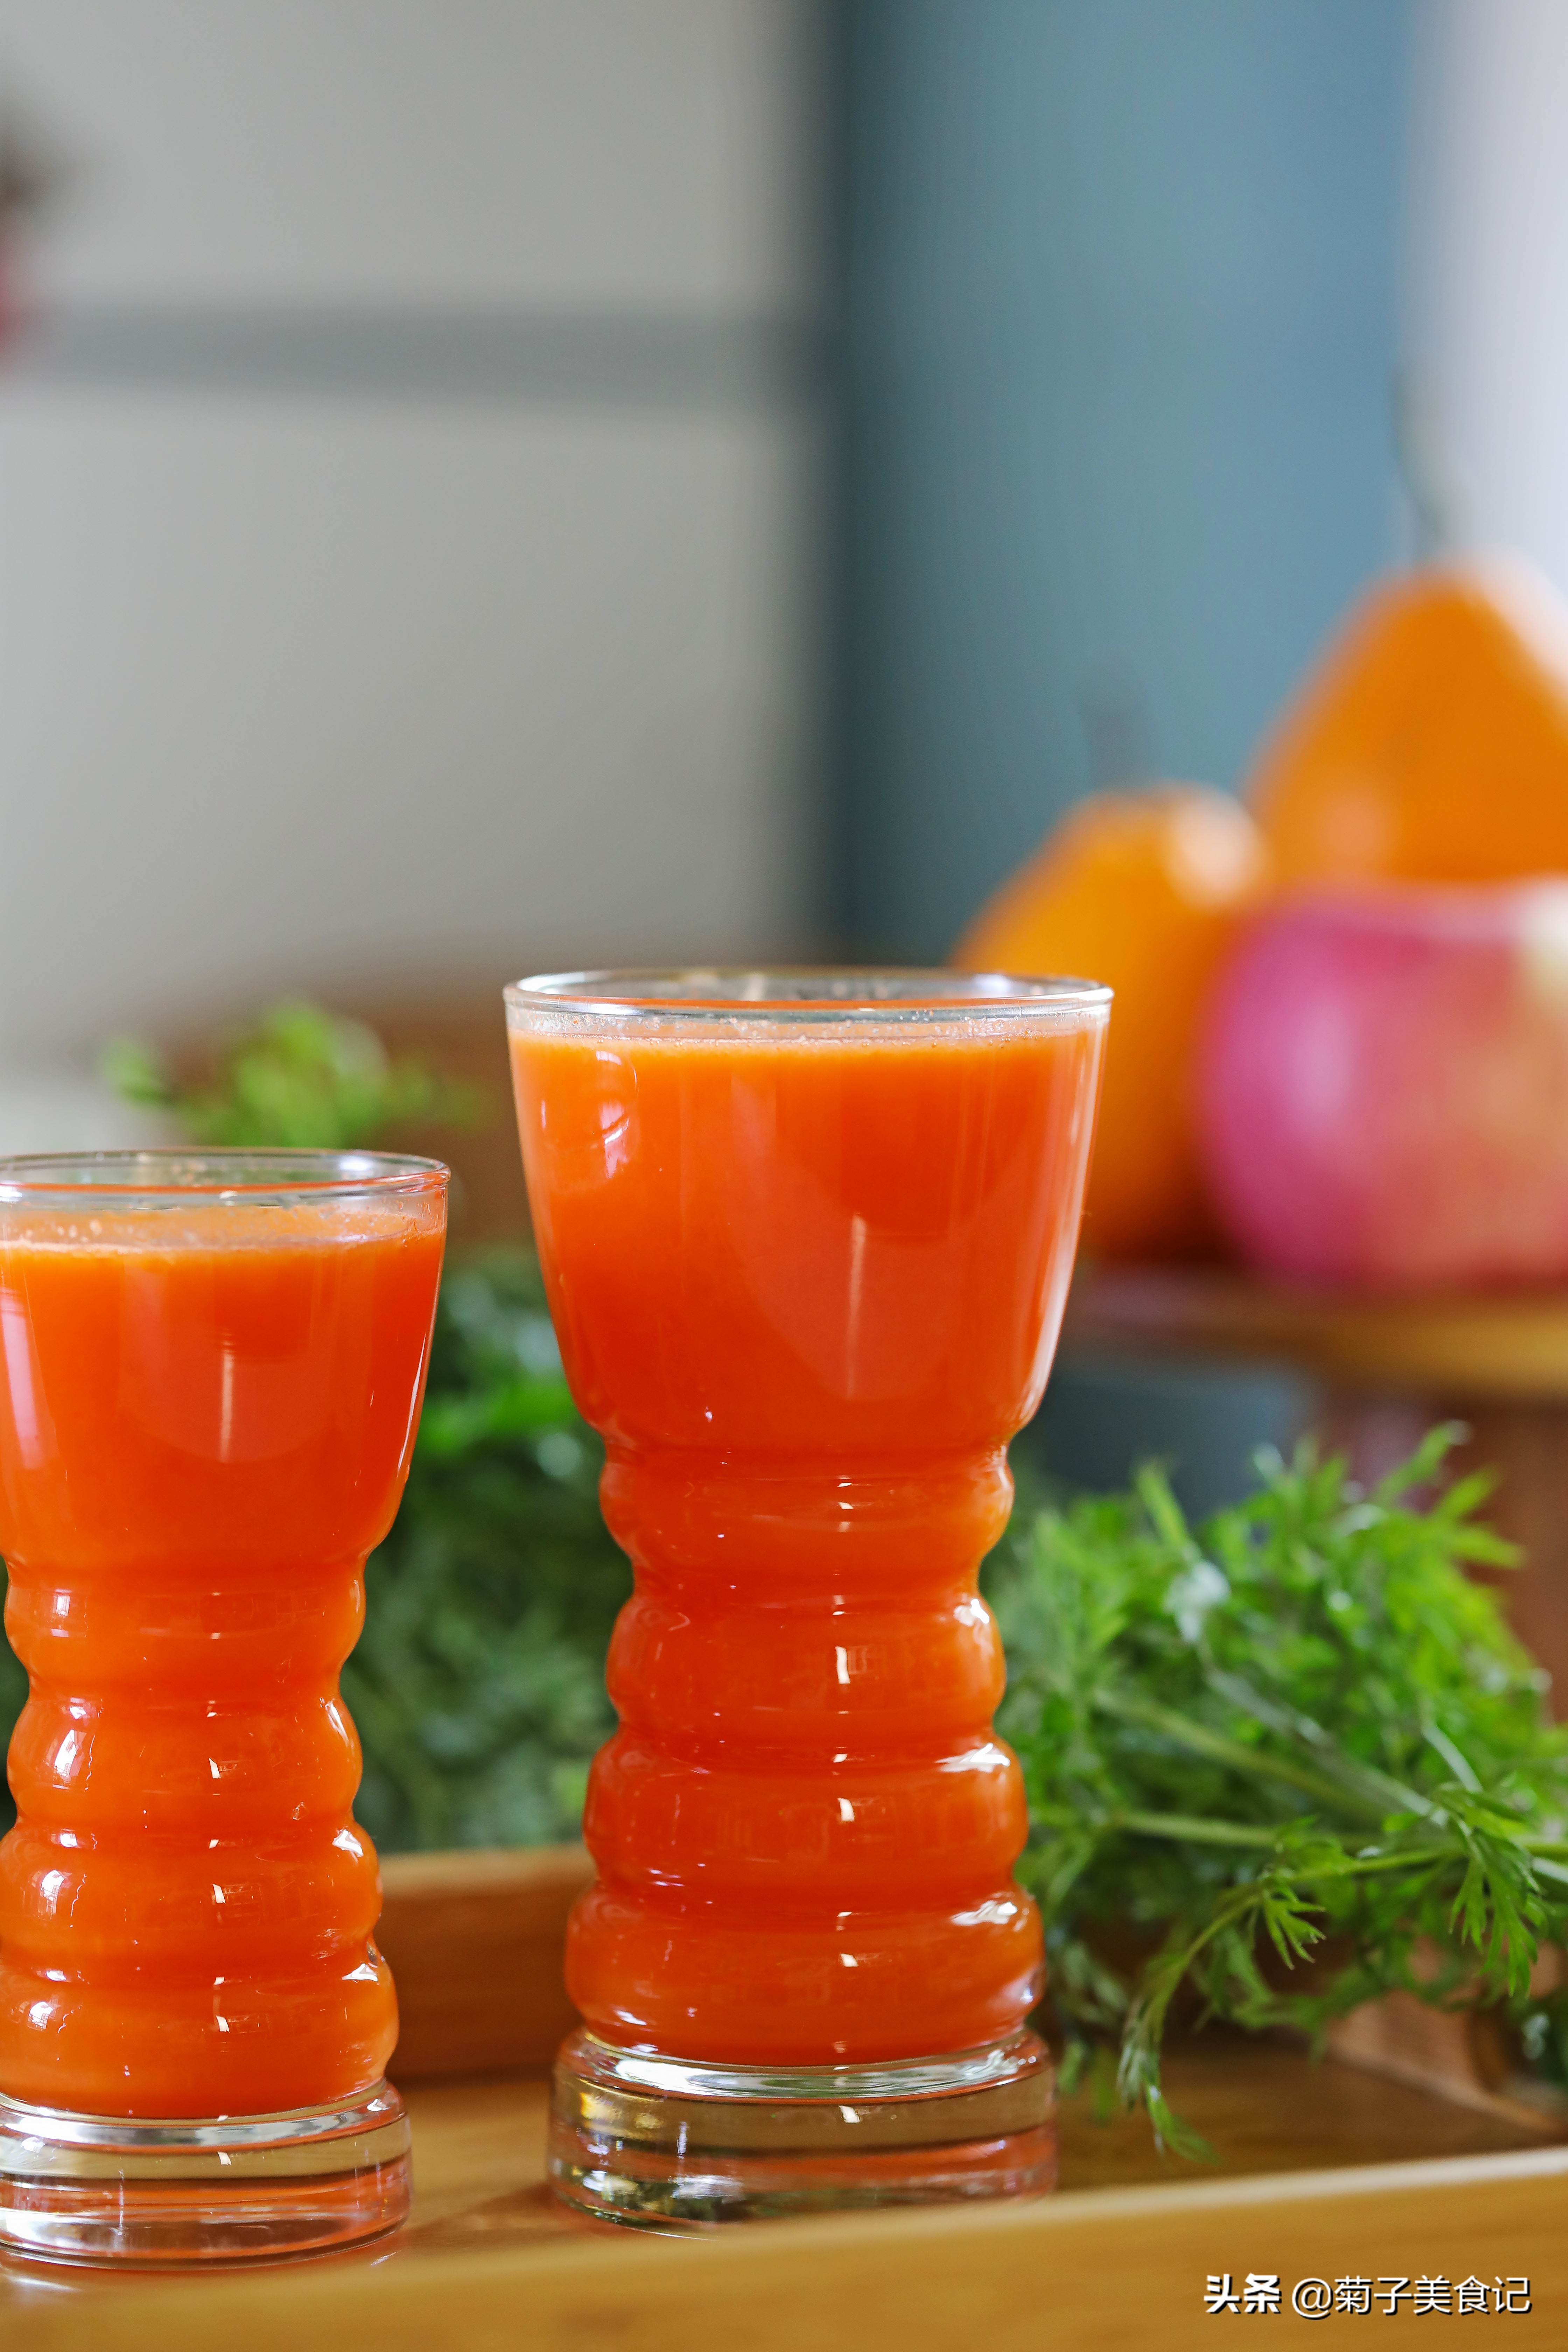 胡萝卜汁的做法 为了让胡萝卜汁更美味，我们可以加入橙子一起鲜榨哦！